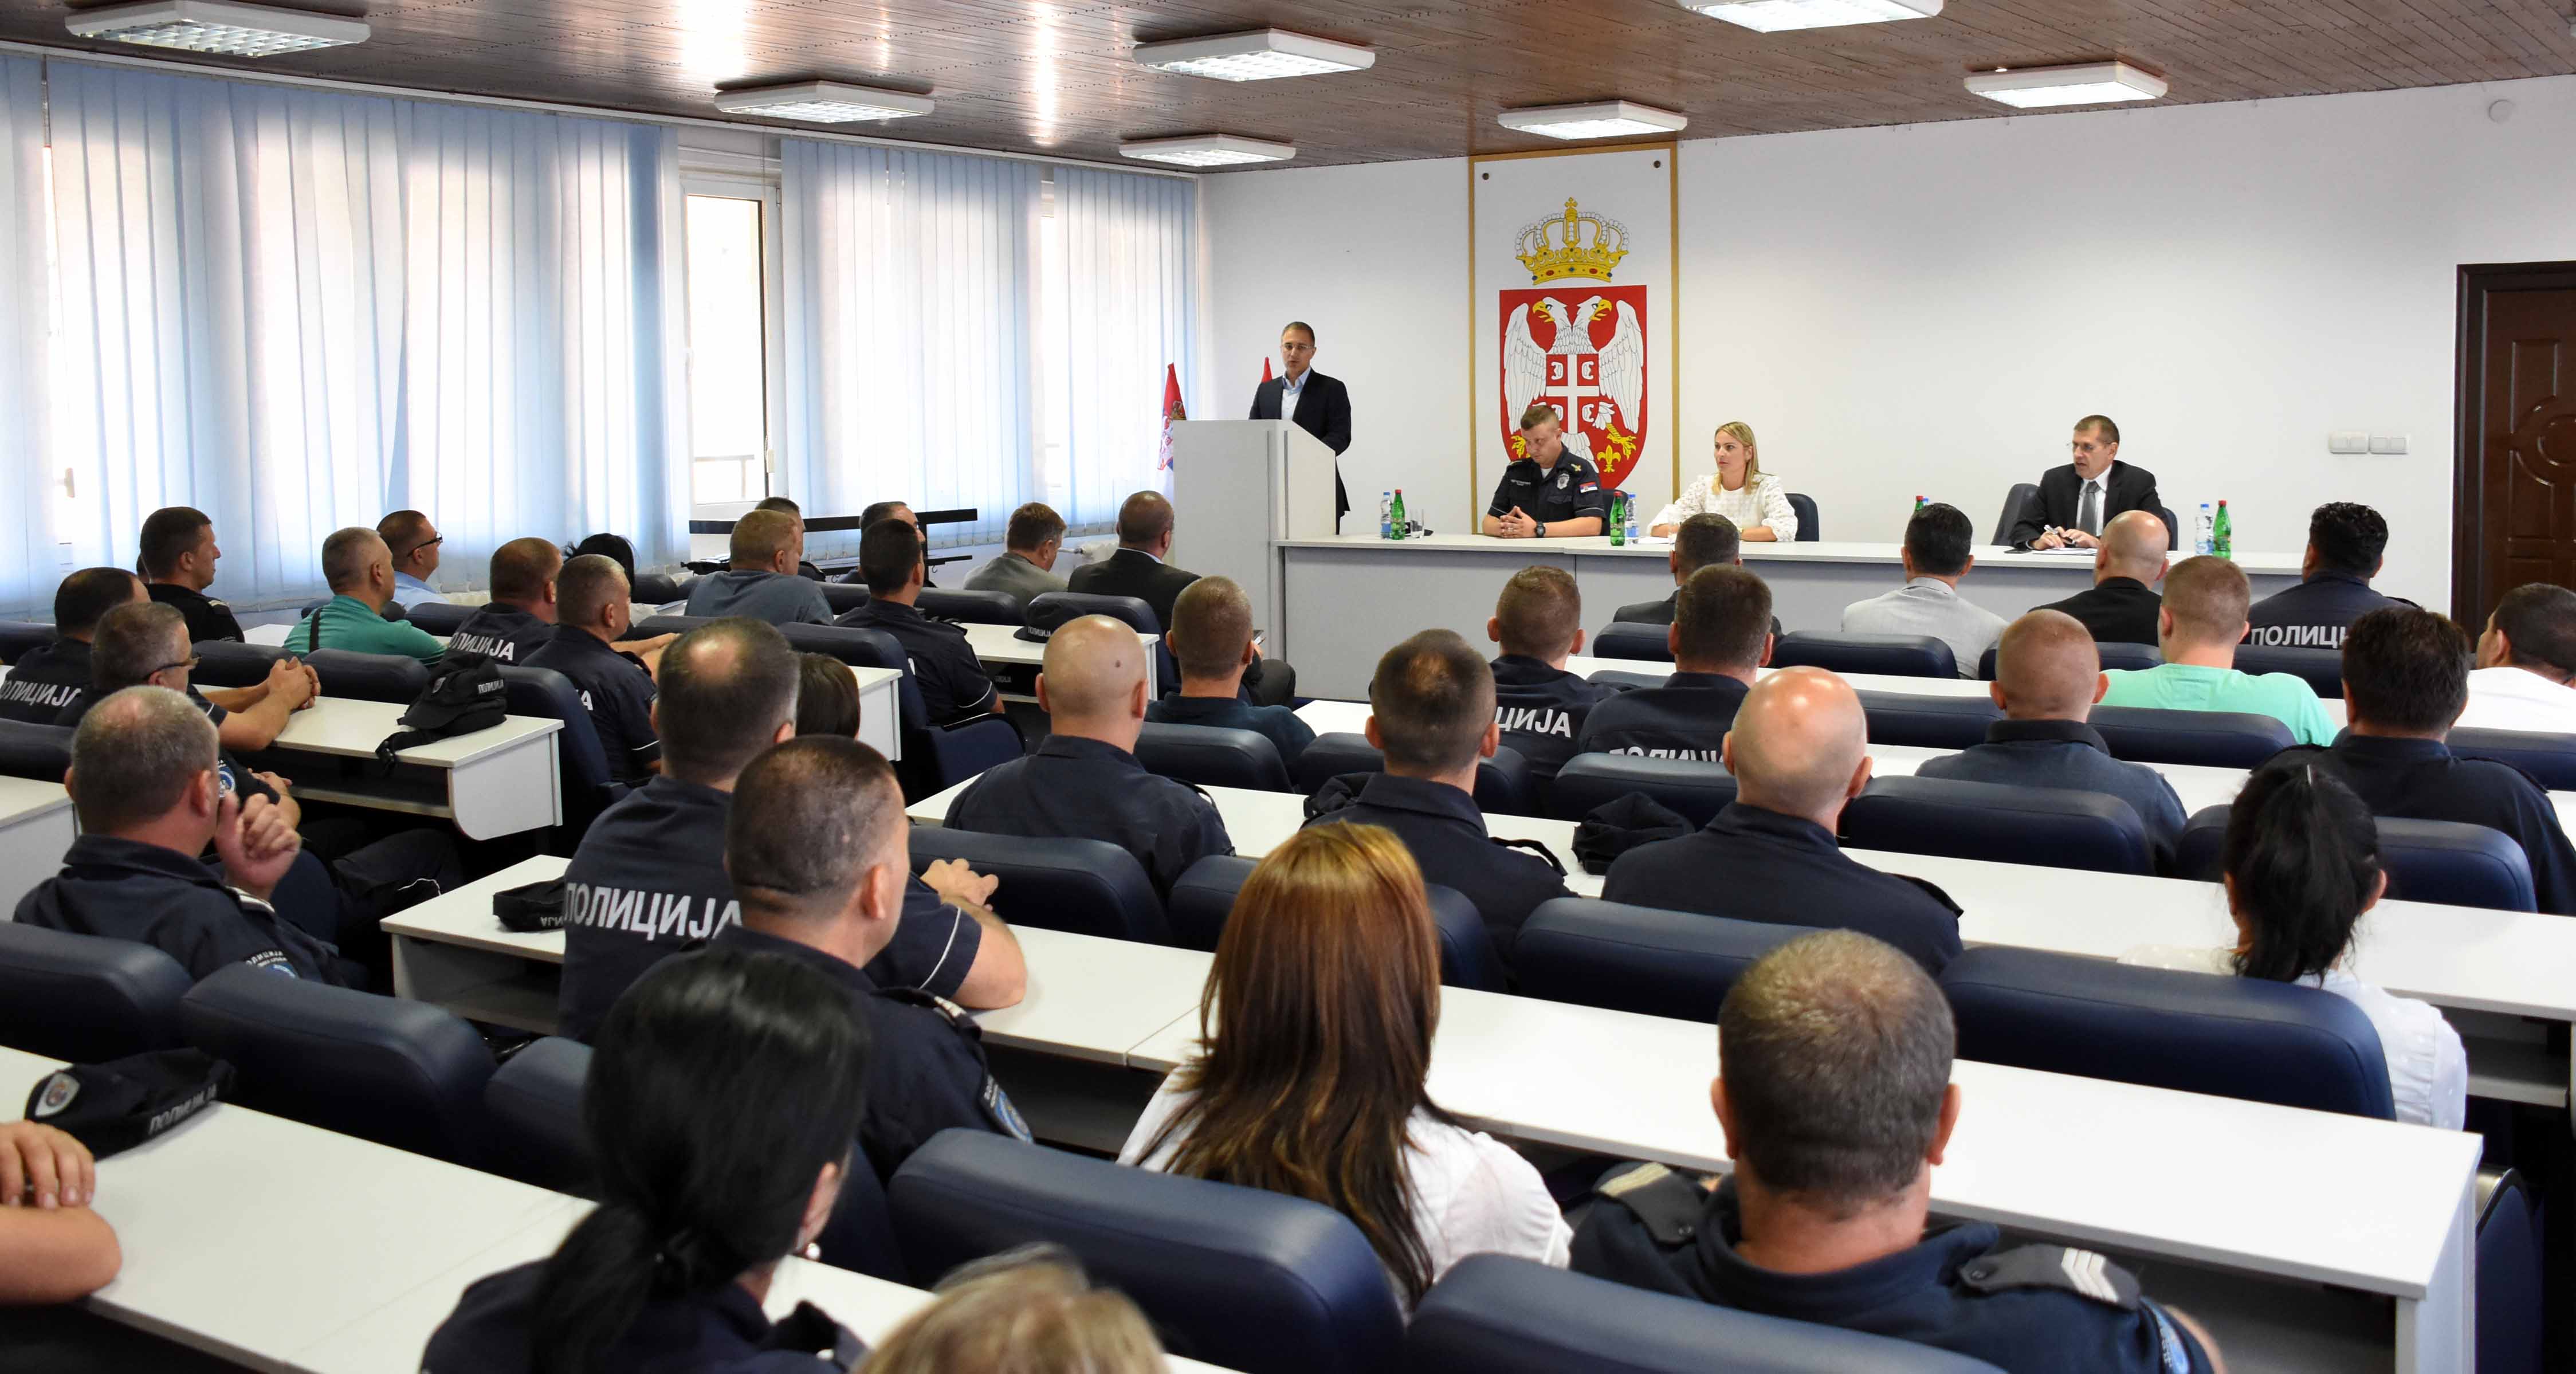 Стефановић: Желимо да полицијски службеници буду боље заштићени, али и да грађани осећају већу безбедност